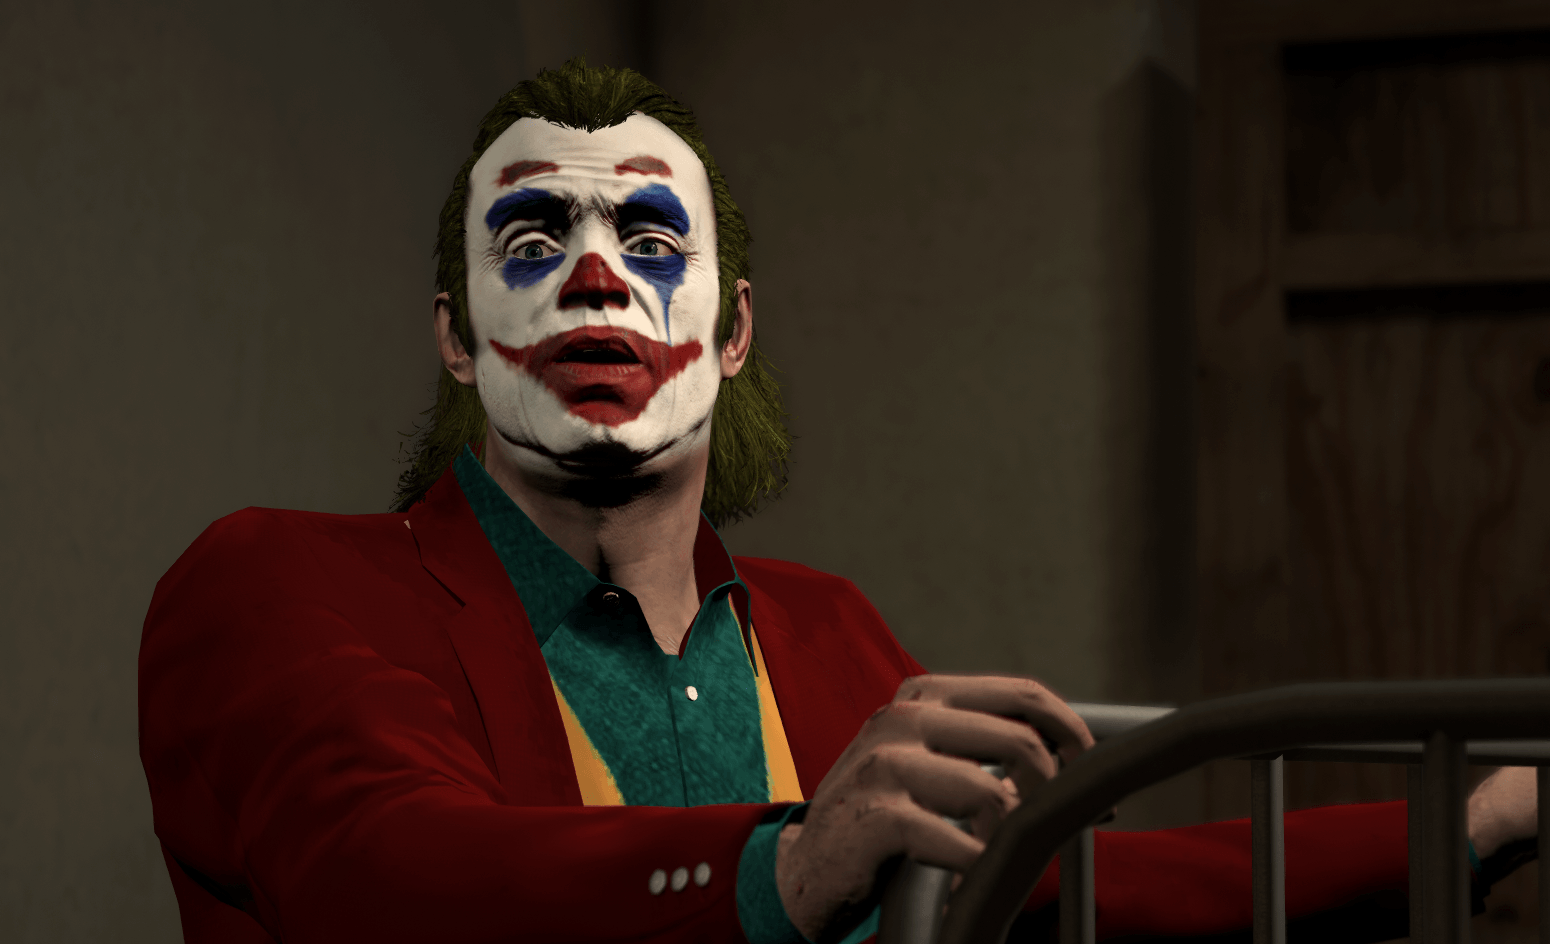 Joker 2019 Wallpaper High Quality